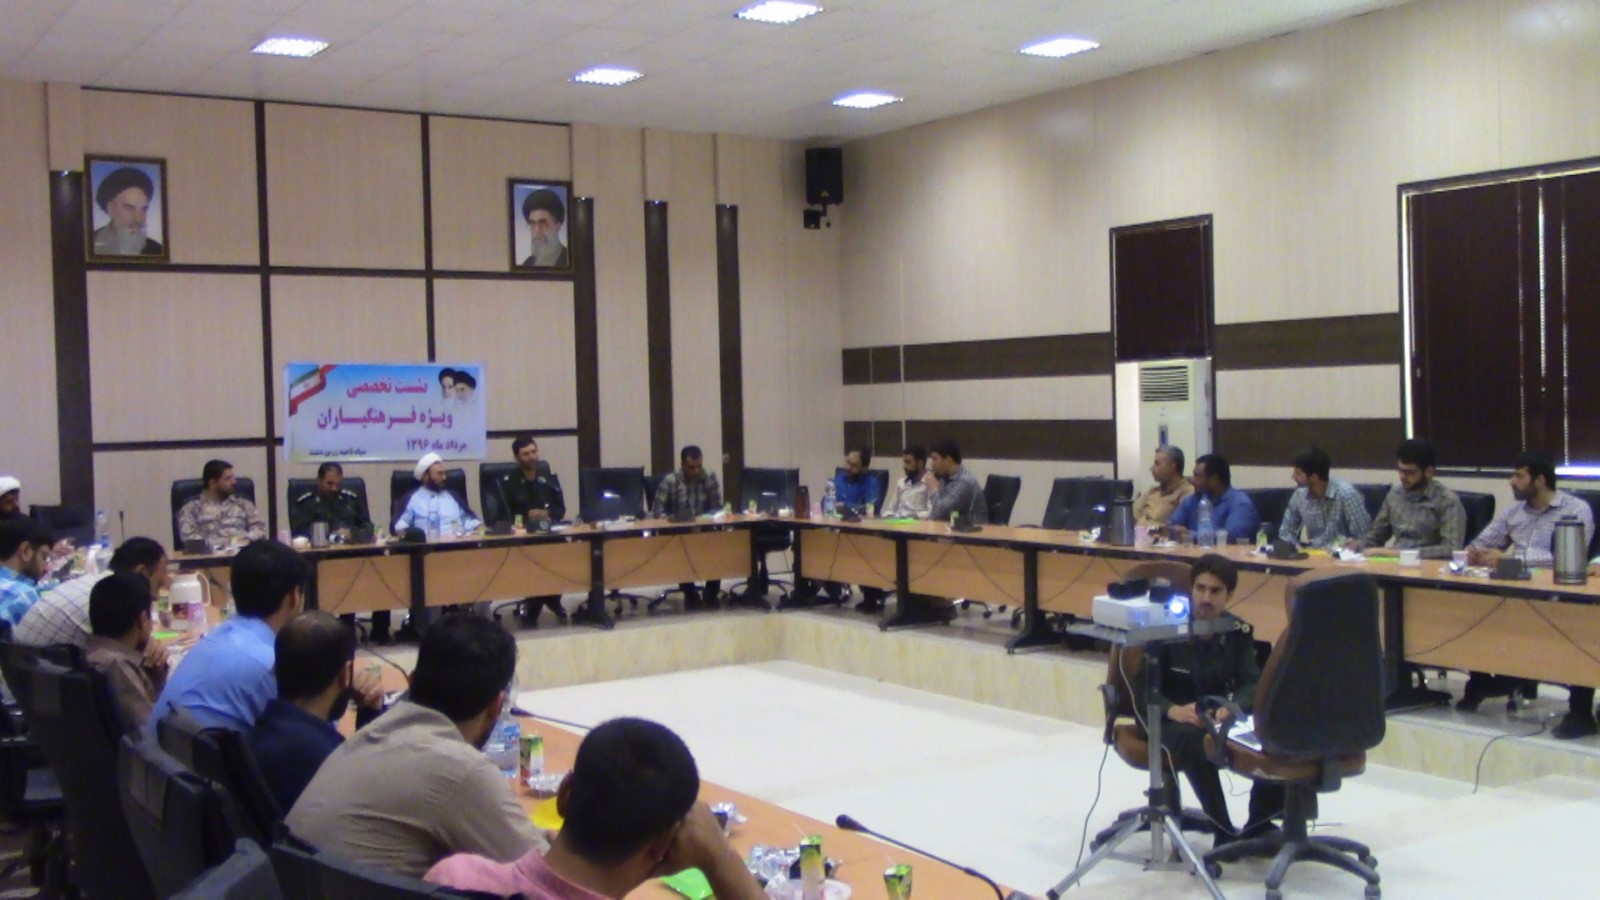 نشست تخصصی فرهنگیاران جنوب  و جنوب شرق استان در زرین دشت برگزار شد